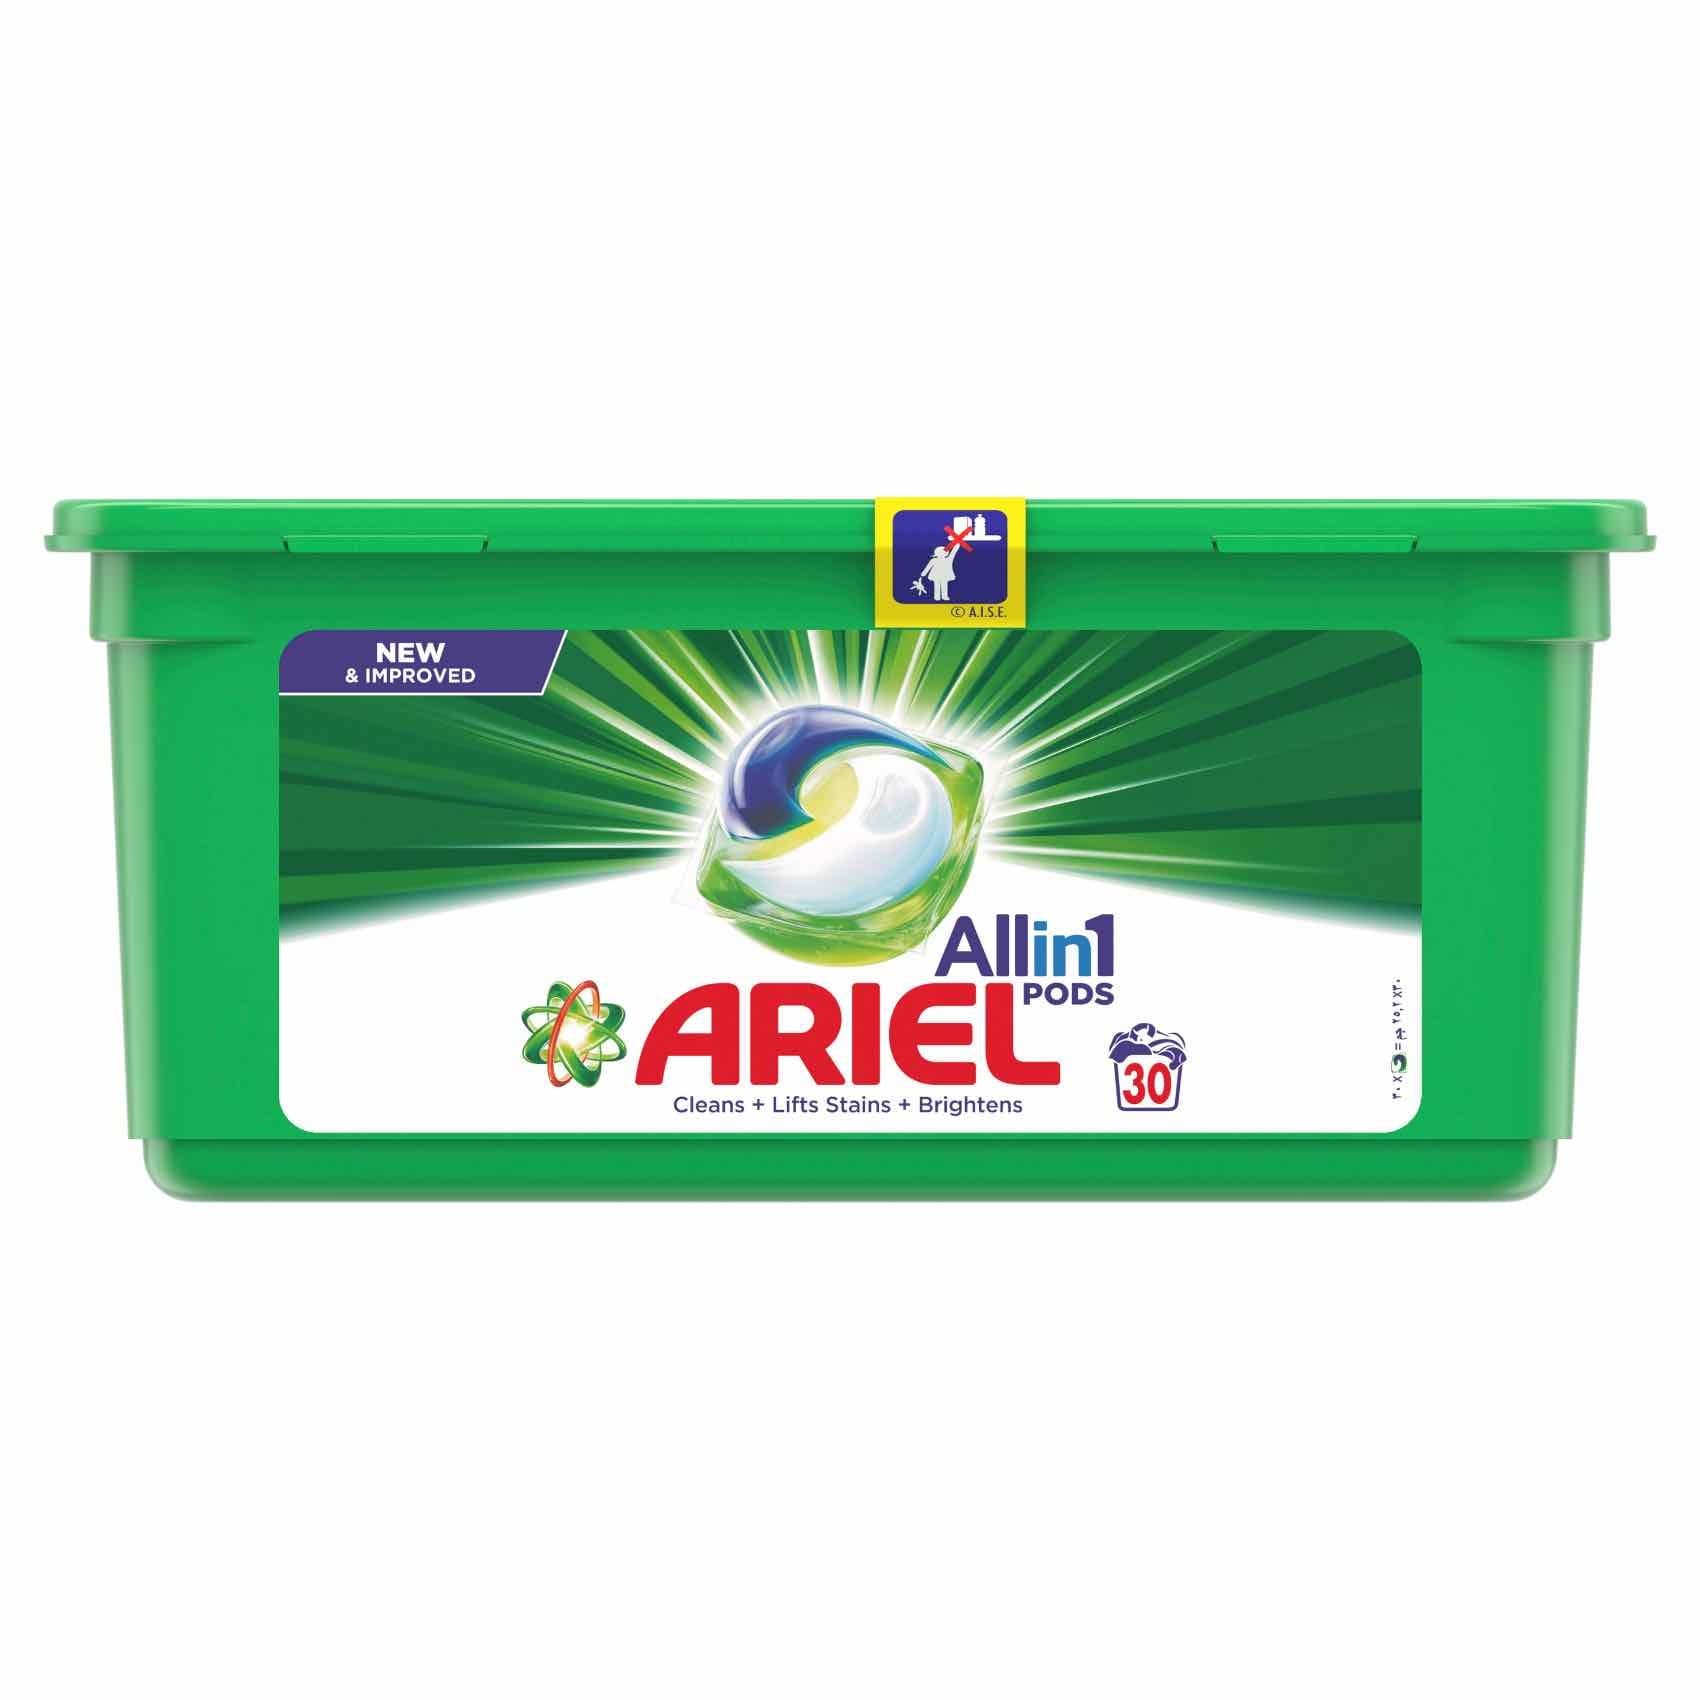 4x ARIEL Lessive Liquide - Active Odor Control - 1,3 litre / 26